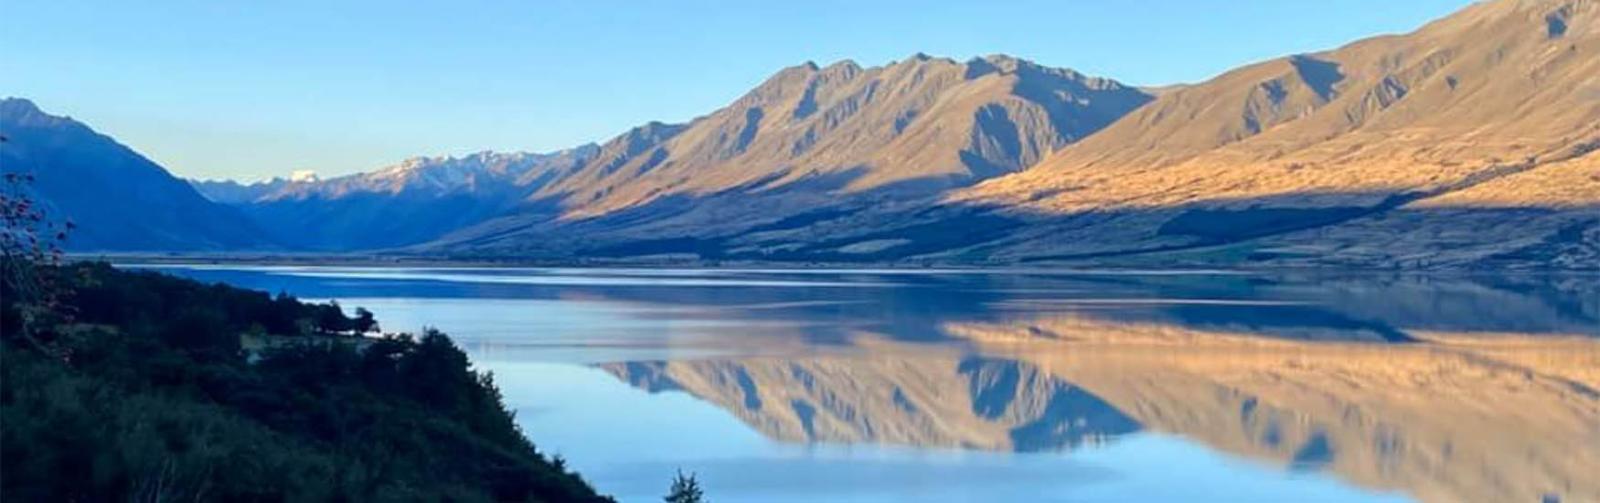 The stunning Mackenzie Country